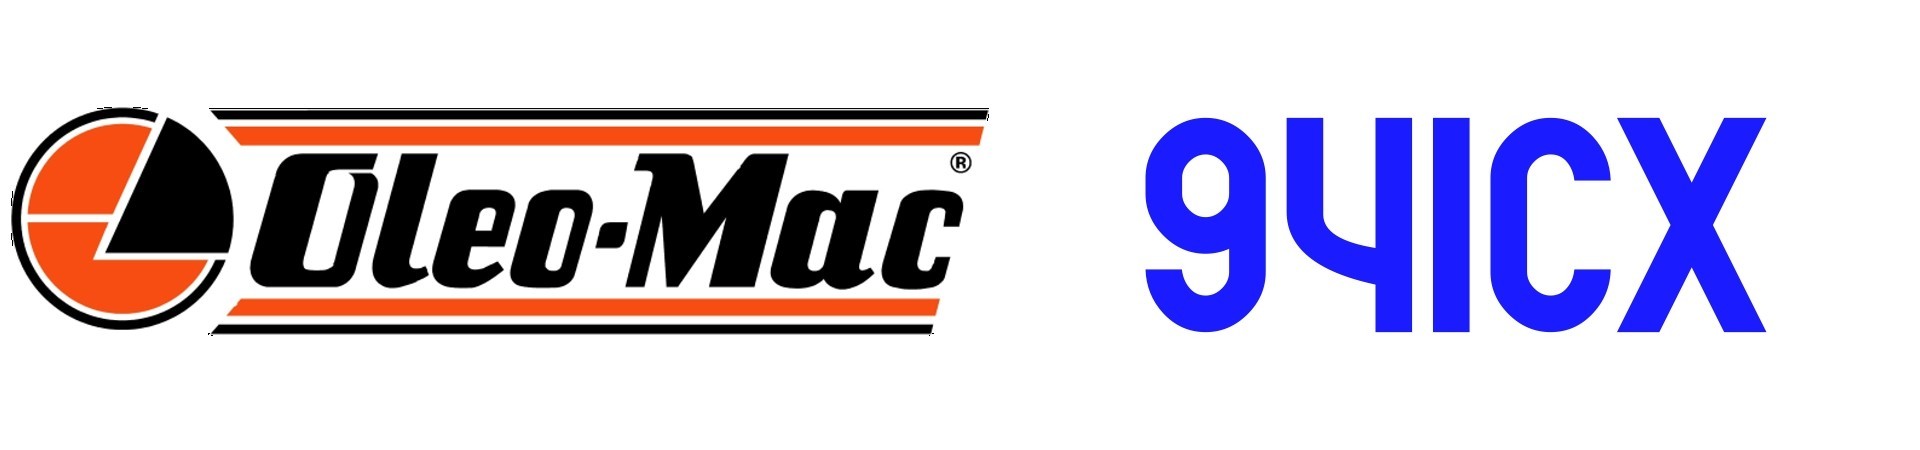 RECAMBIOS Motosierra Oleo Mac 941CX al Mejor PRECIO